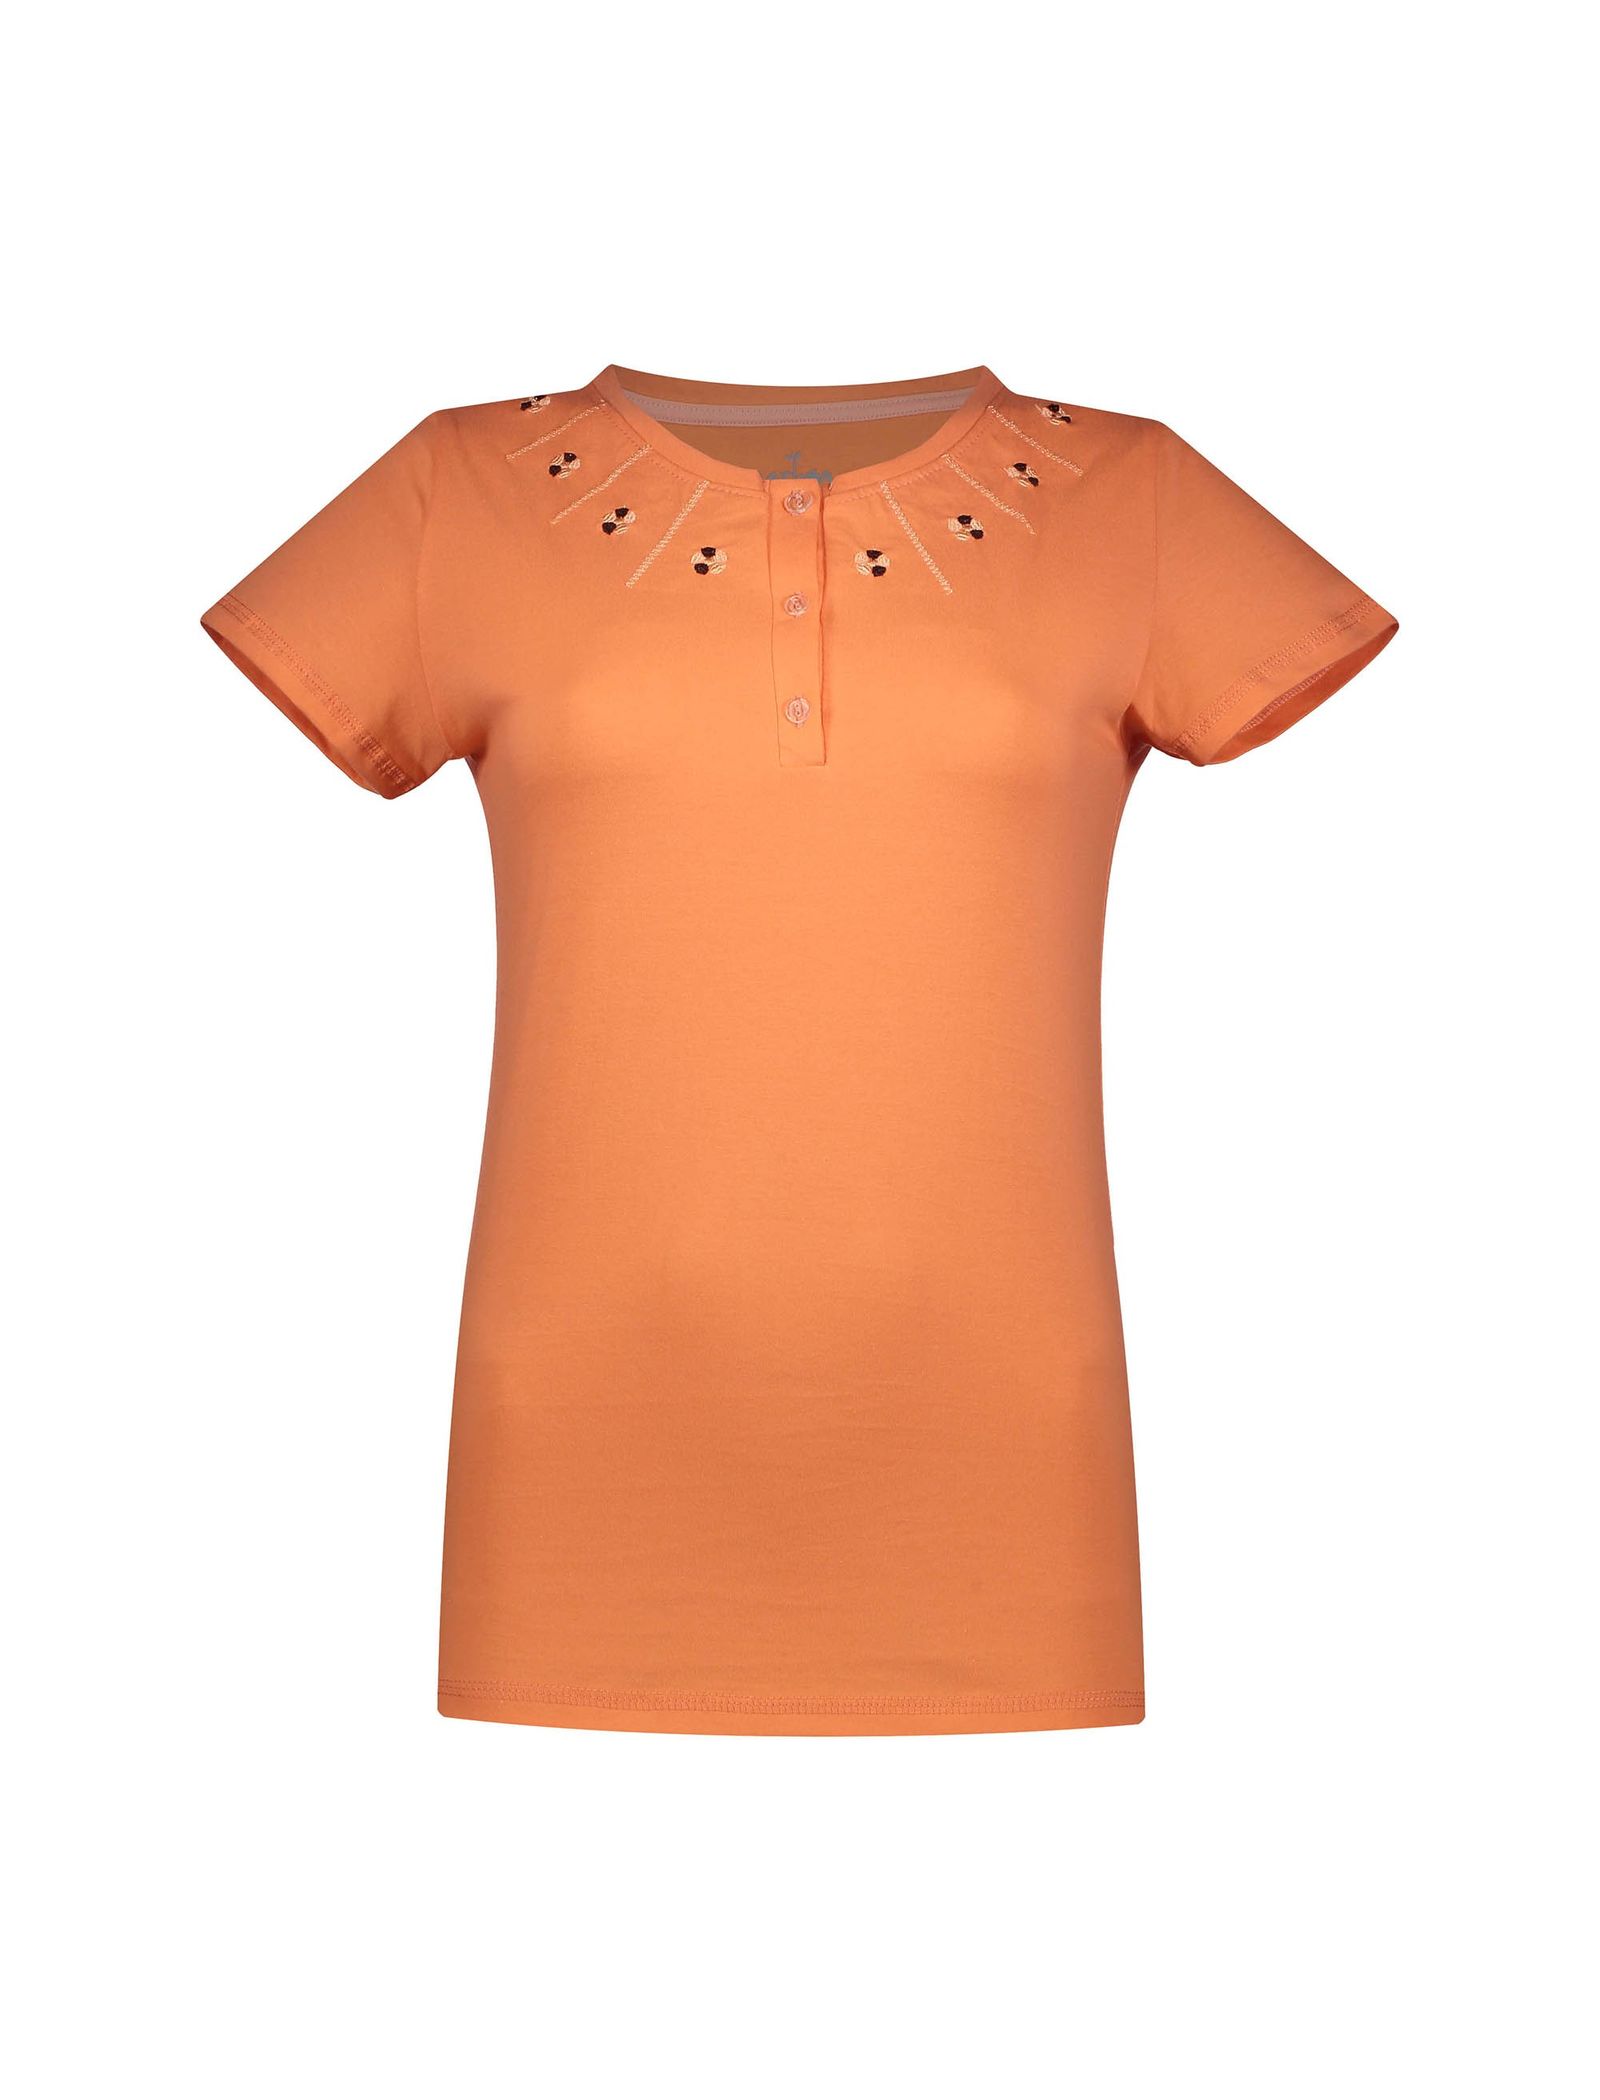 تی شرت و شلوار راحتی نخی زنانه - ناربن - نارنجي - 3